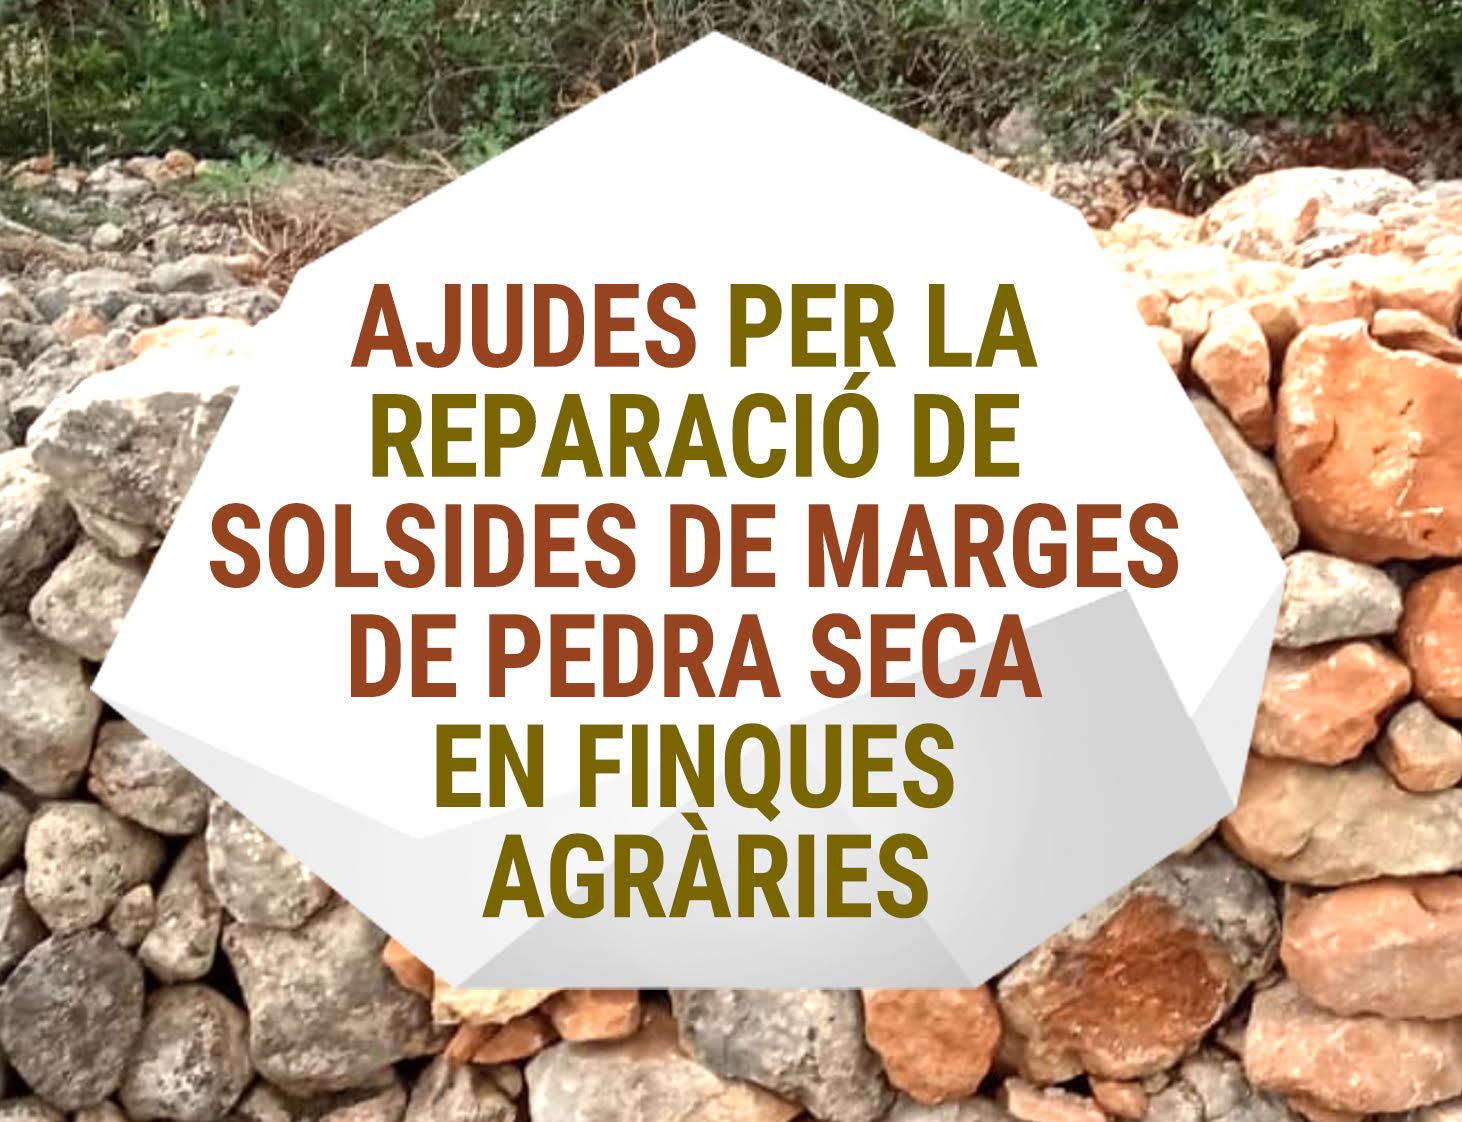 SUBVENCIONS PER A REPARACIONS DE SOLSIDES EN MARGES DE PEDRA